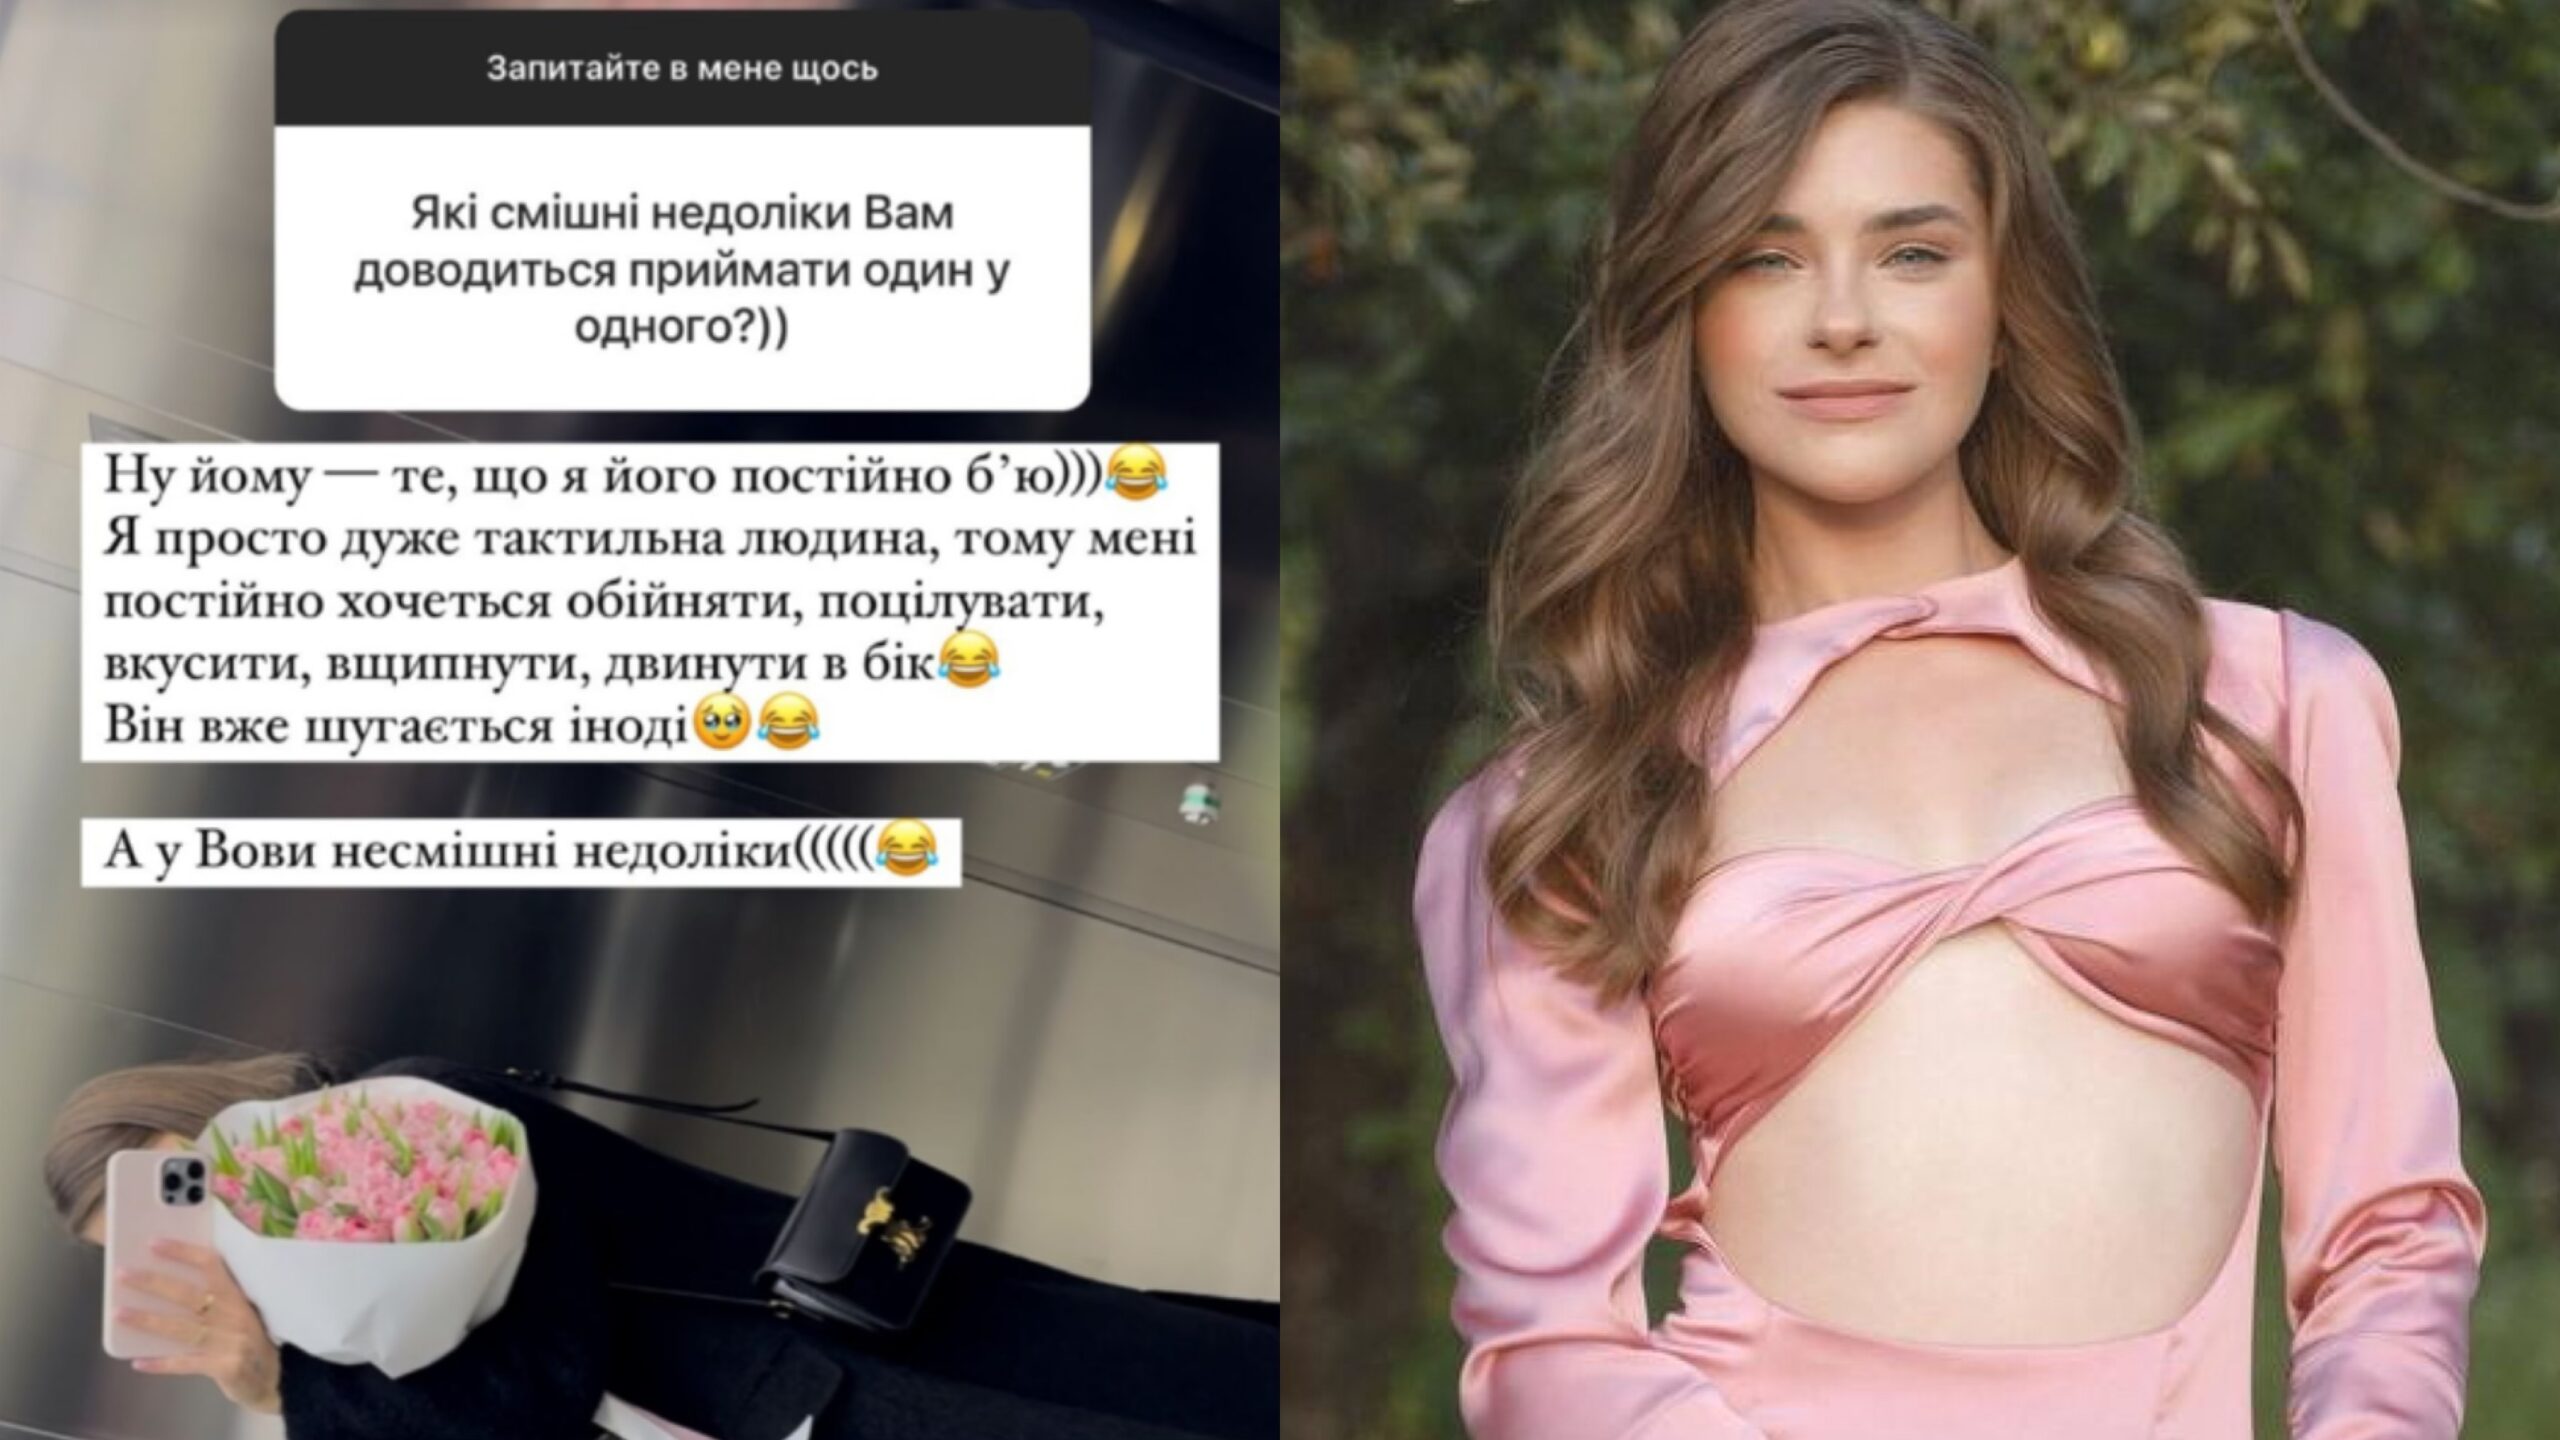 Дружина Володимира Остапчука розповіла один факт про їхні стосунки. Фото з Instagram @poka.tya